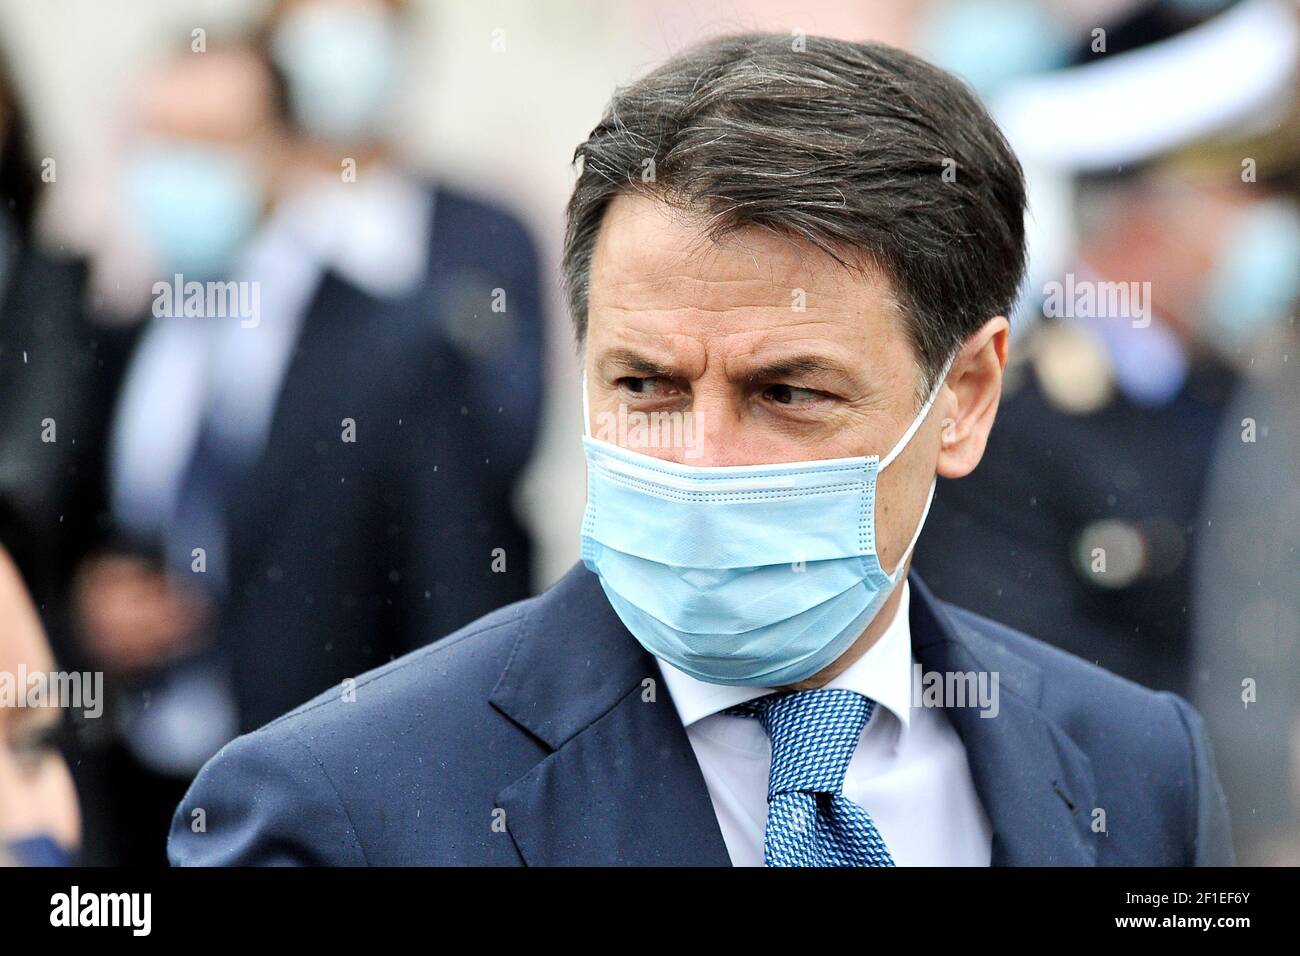 Giuseppe Conte Presidente del Consiglio dei Ministri della Repubblica Italiana con maschera anti-coronavirus, durante una visita al 'Francesco Gesuè' Foto Stock